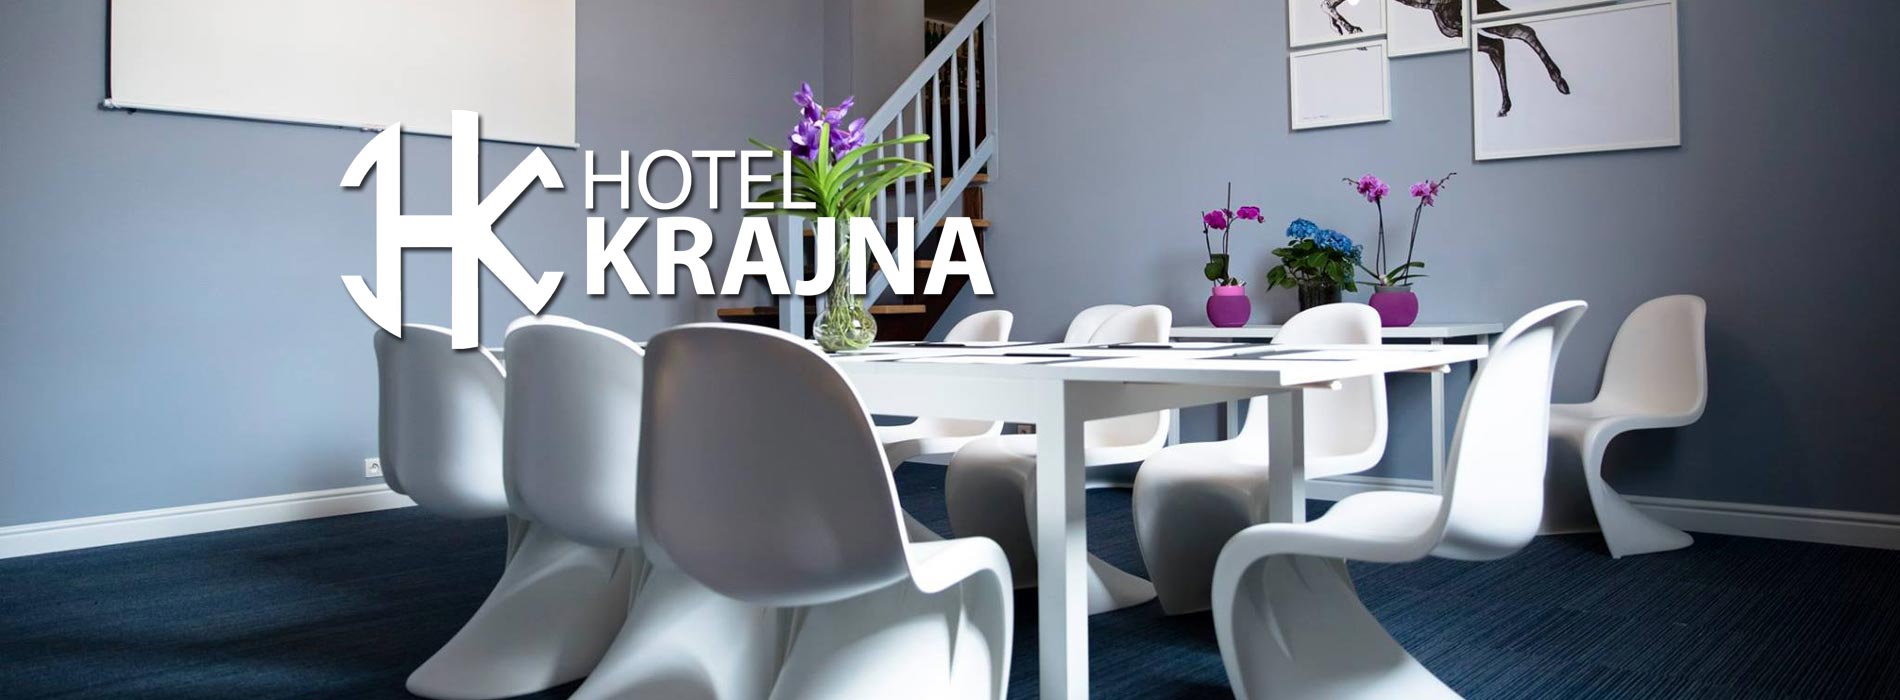 Hotel Krajna